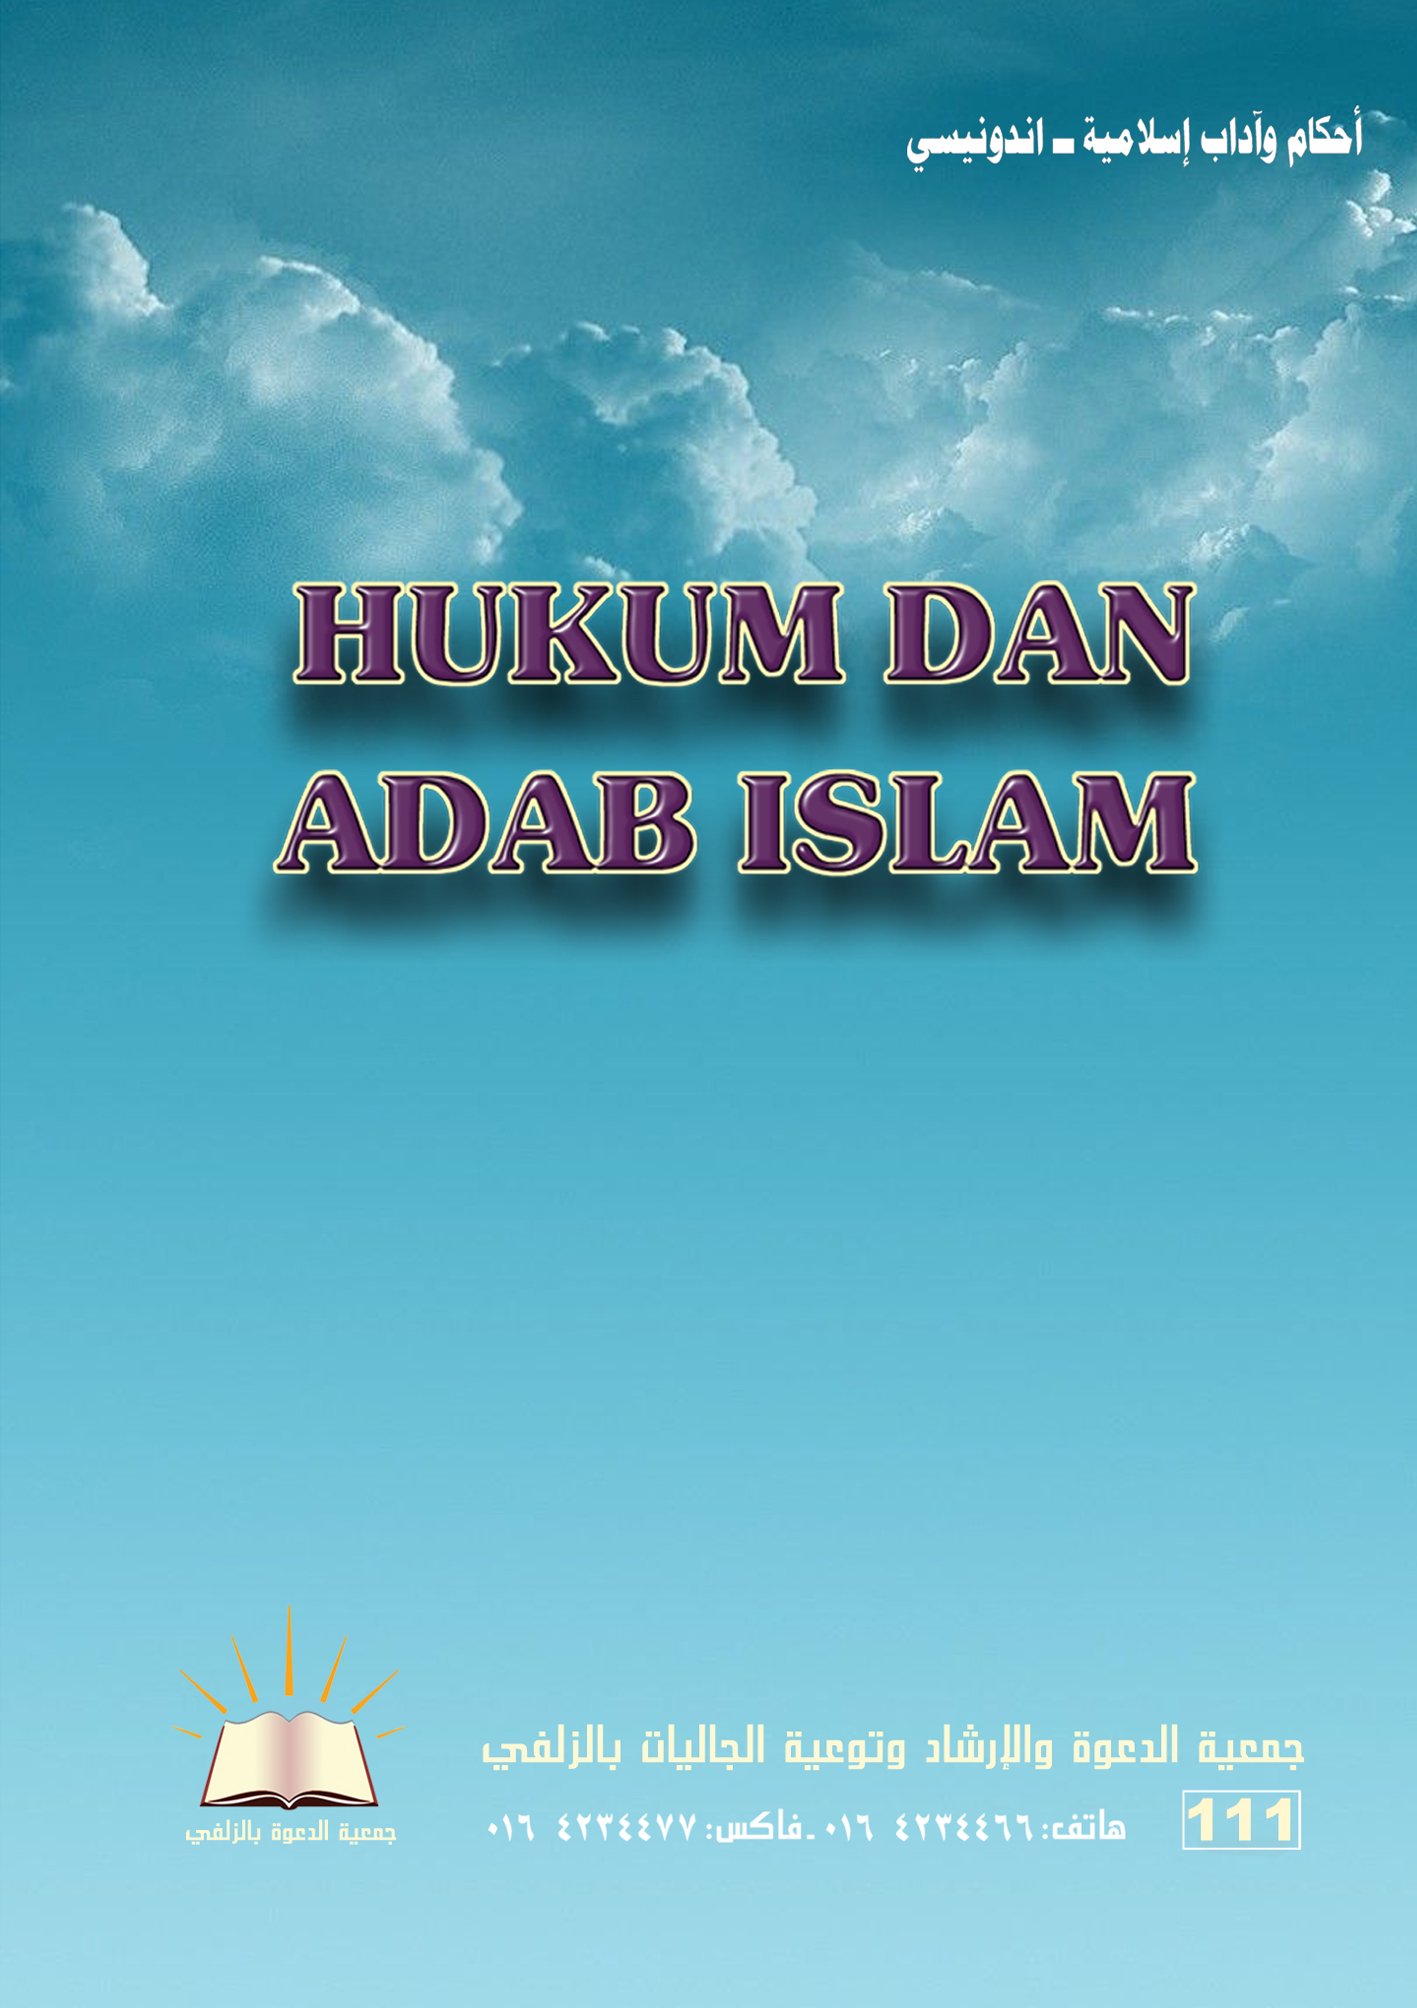 HUKUM DAN ADAB ISLAM - أحكام وآداب إسلامية